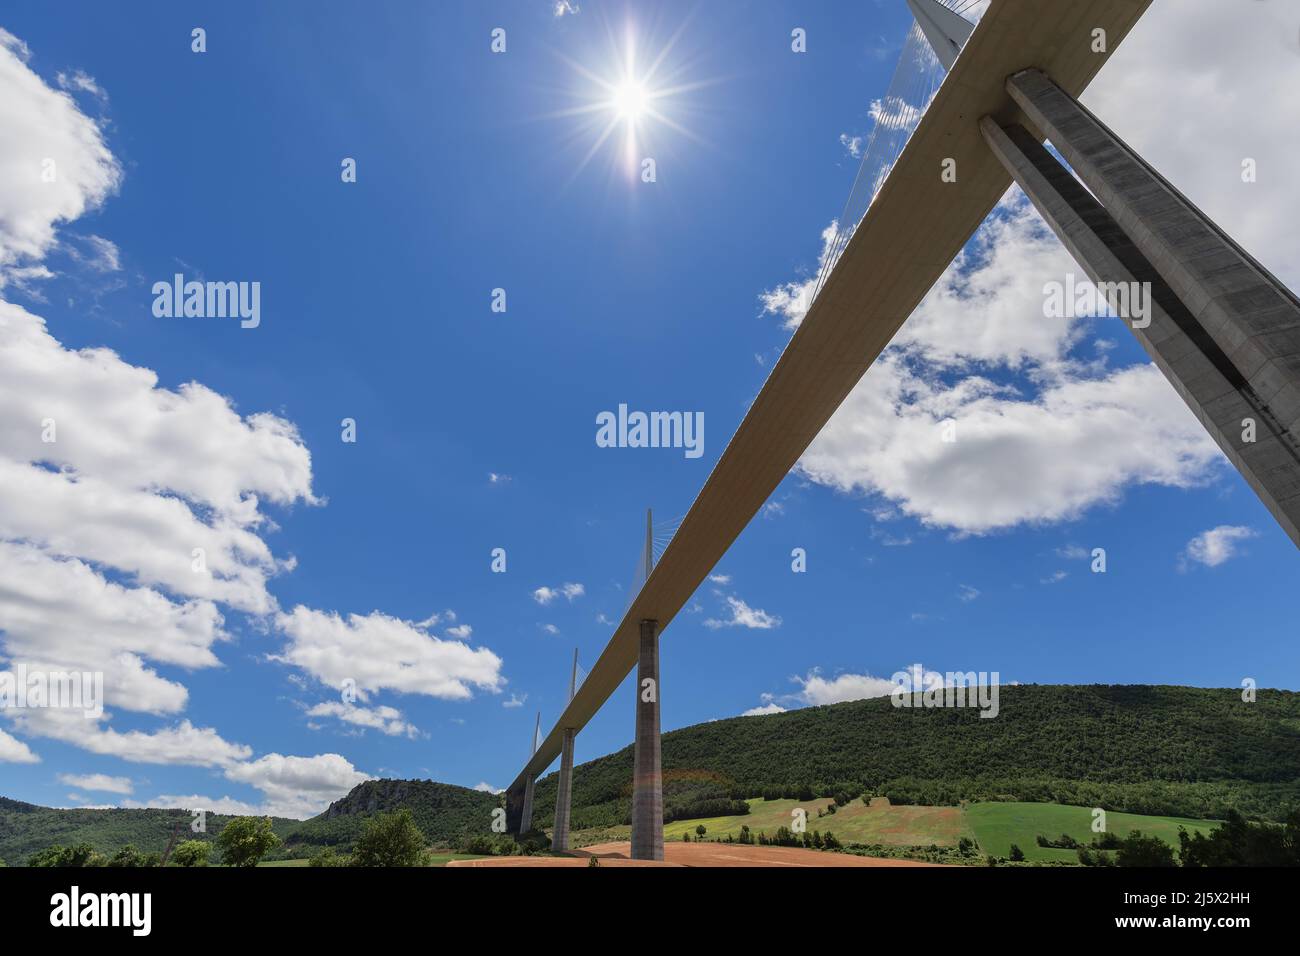 Die hellste Mittagssonne erhellt den blauen Himmel und das Viadukt von Millau, nahe gelegene landwirtschaftliche Felder, Wald auf Hügeln. Aveyron, Ozitanien, Südfrankreich Stockfoto